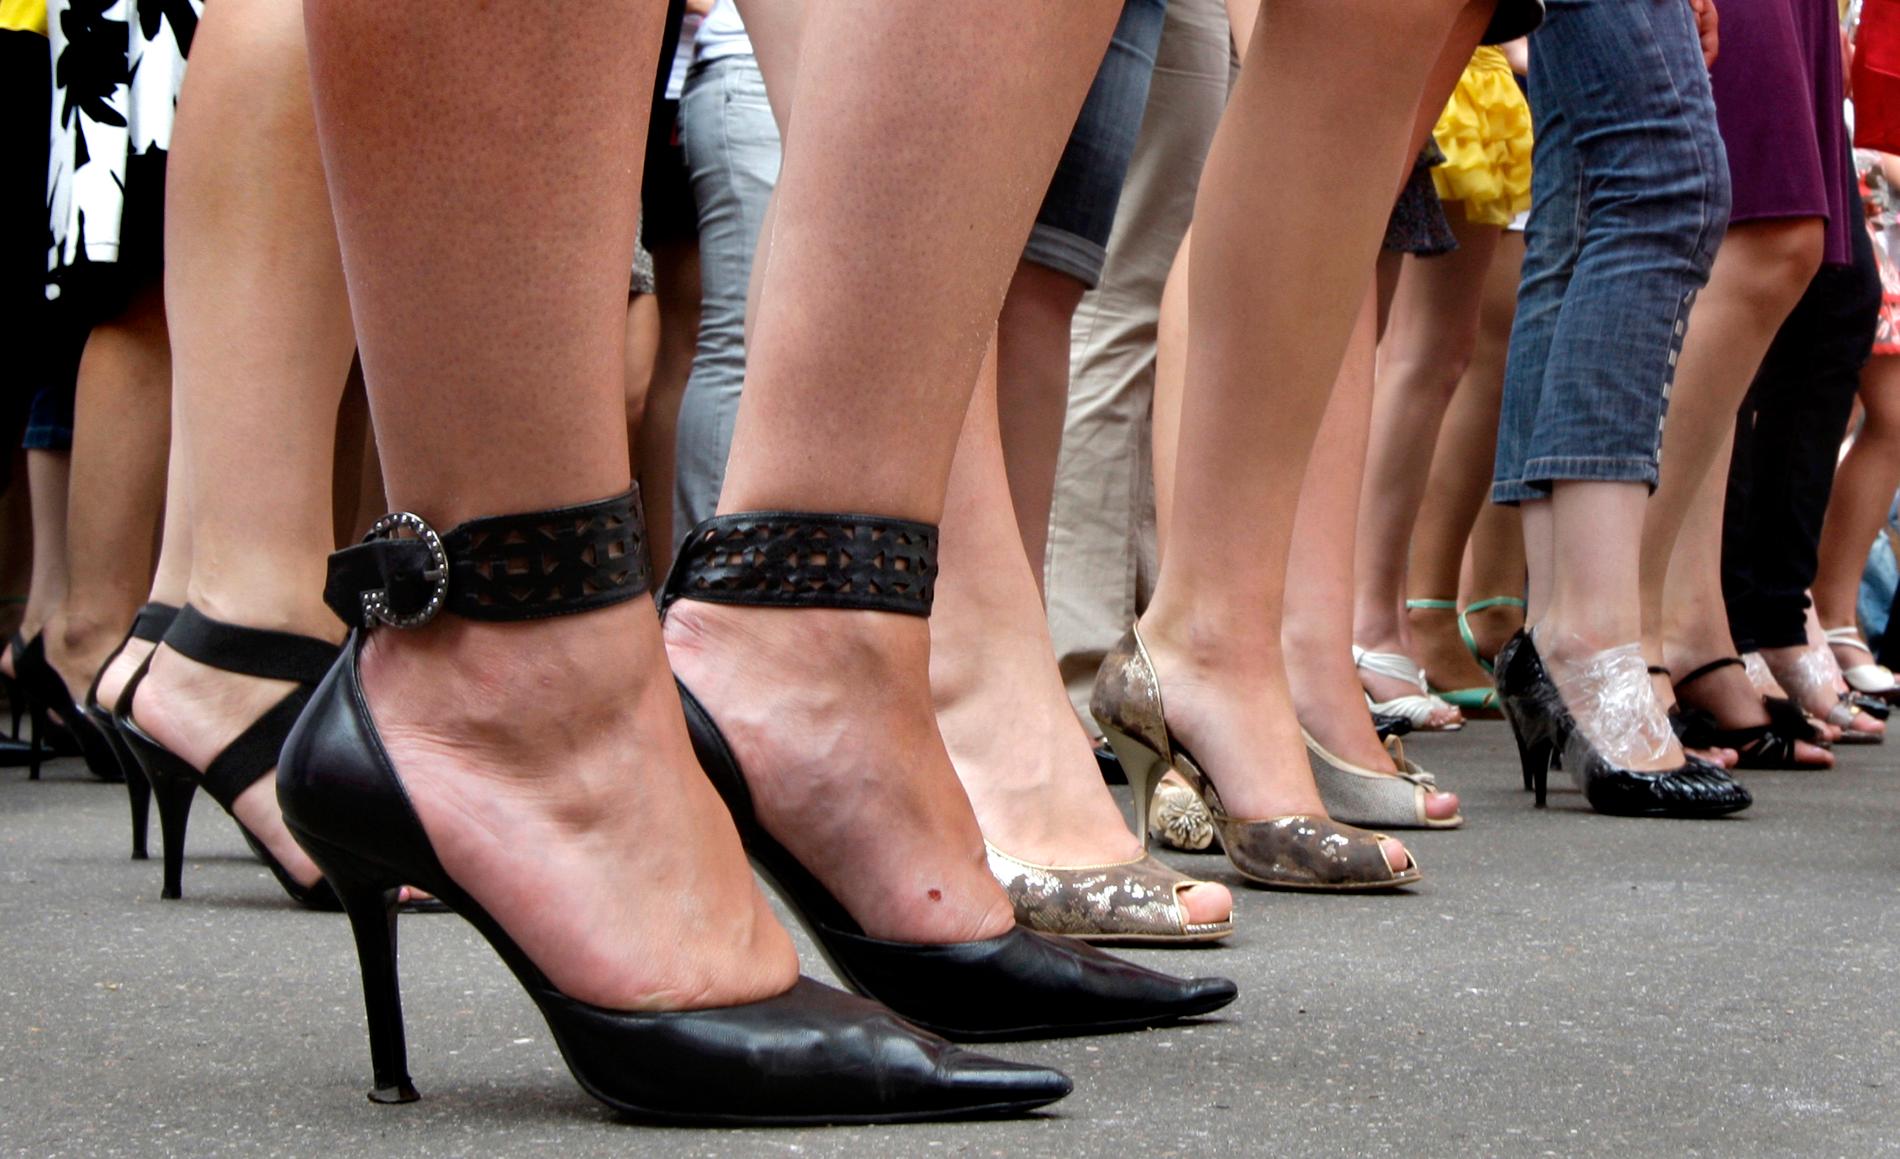 Tusentals japanska kvinnor har skrivit under för att slippa högklackade skor på jobbet. Arkivbild.